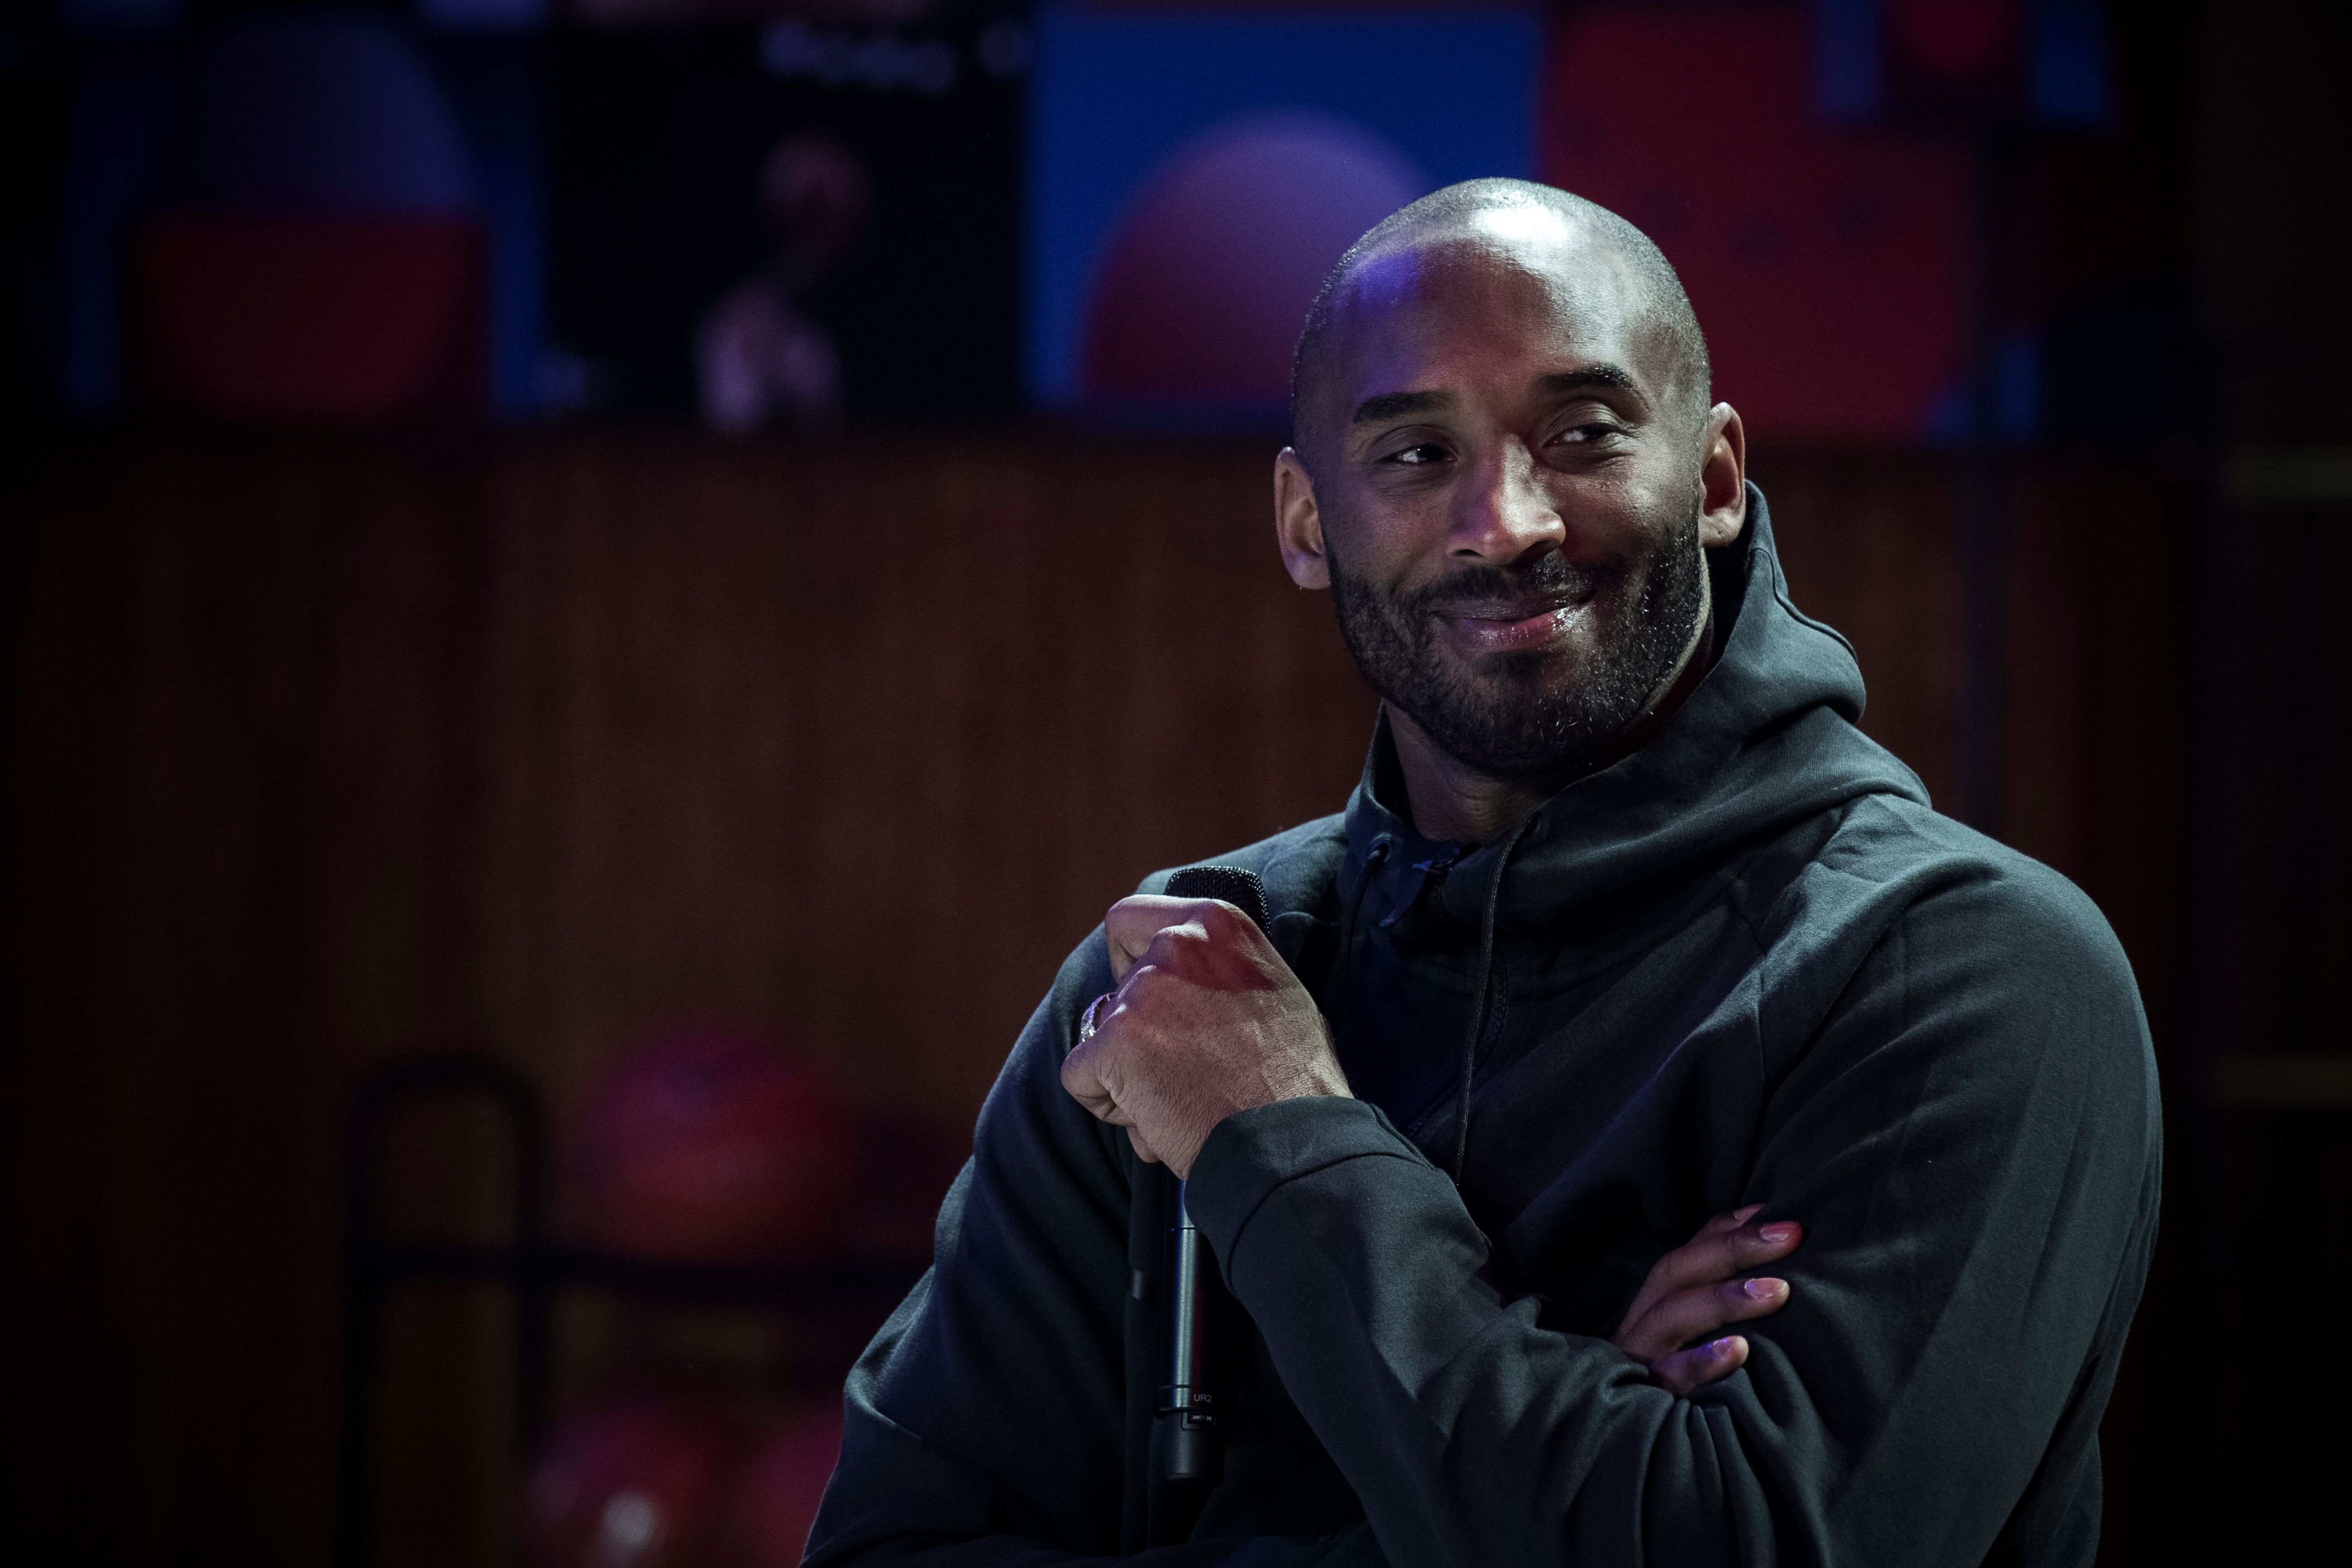 Kobe Bryant's expired Nike deal, explained